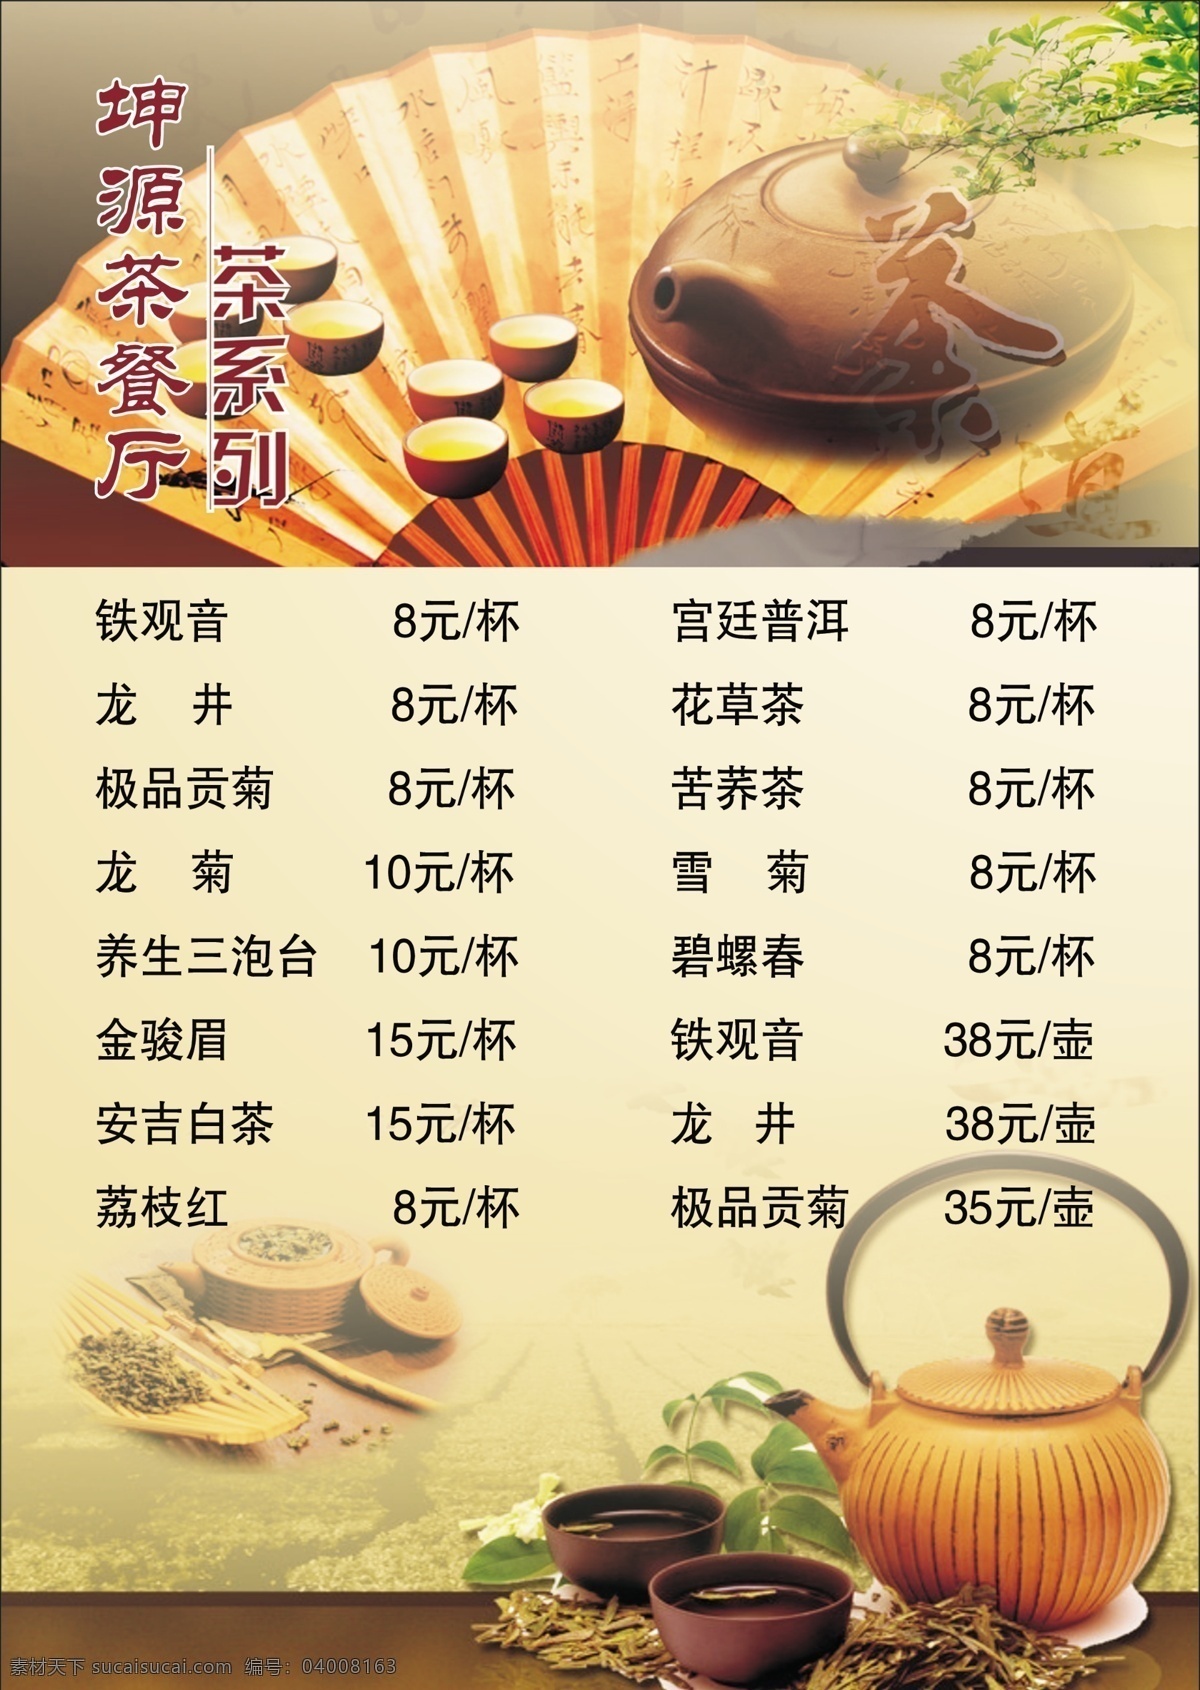 点餐单 茶水单 中国风餐单 饮料菜单 茶餐厅菜单 酒水餐单 红茶 绿茶 分层